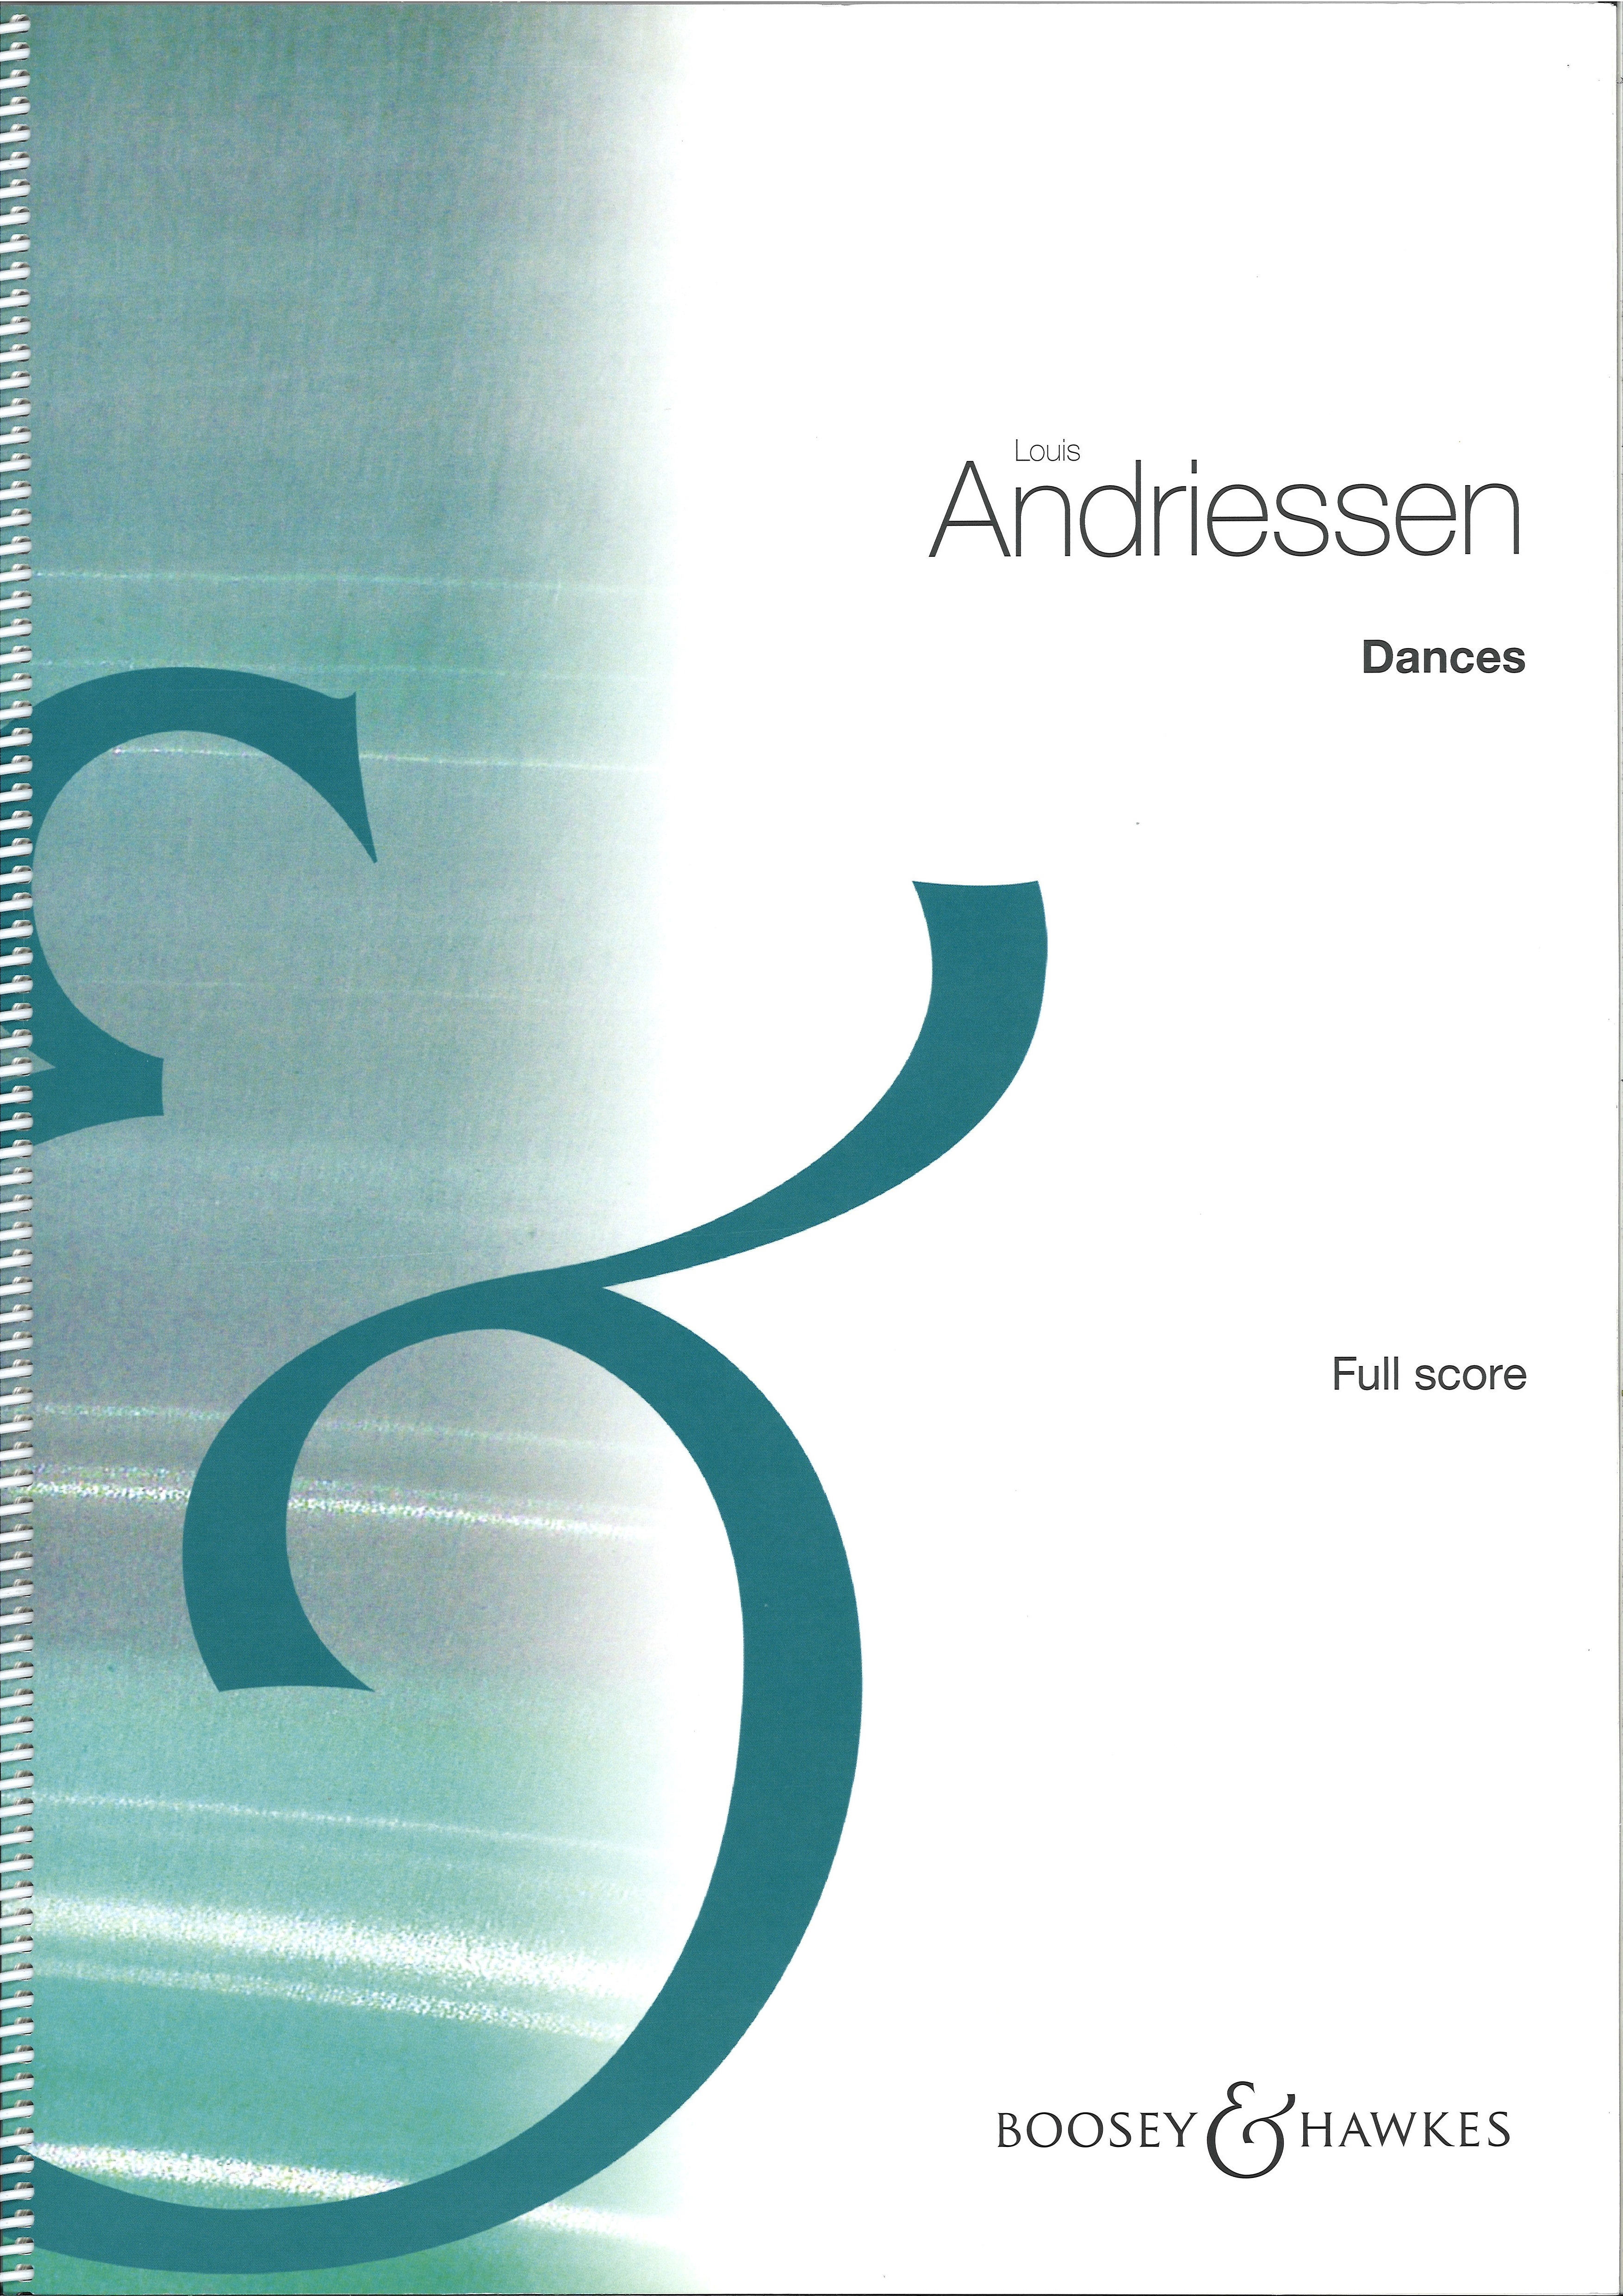 Andriessen Dances Full Score Sheet Music Songbook